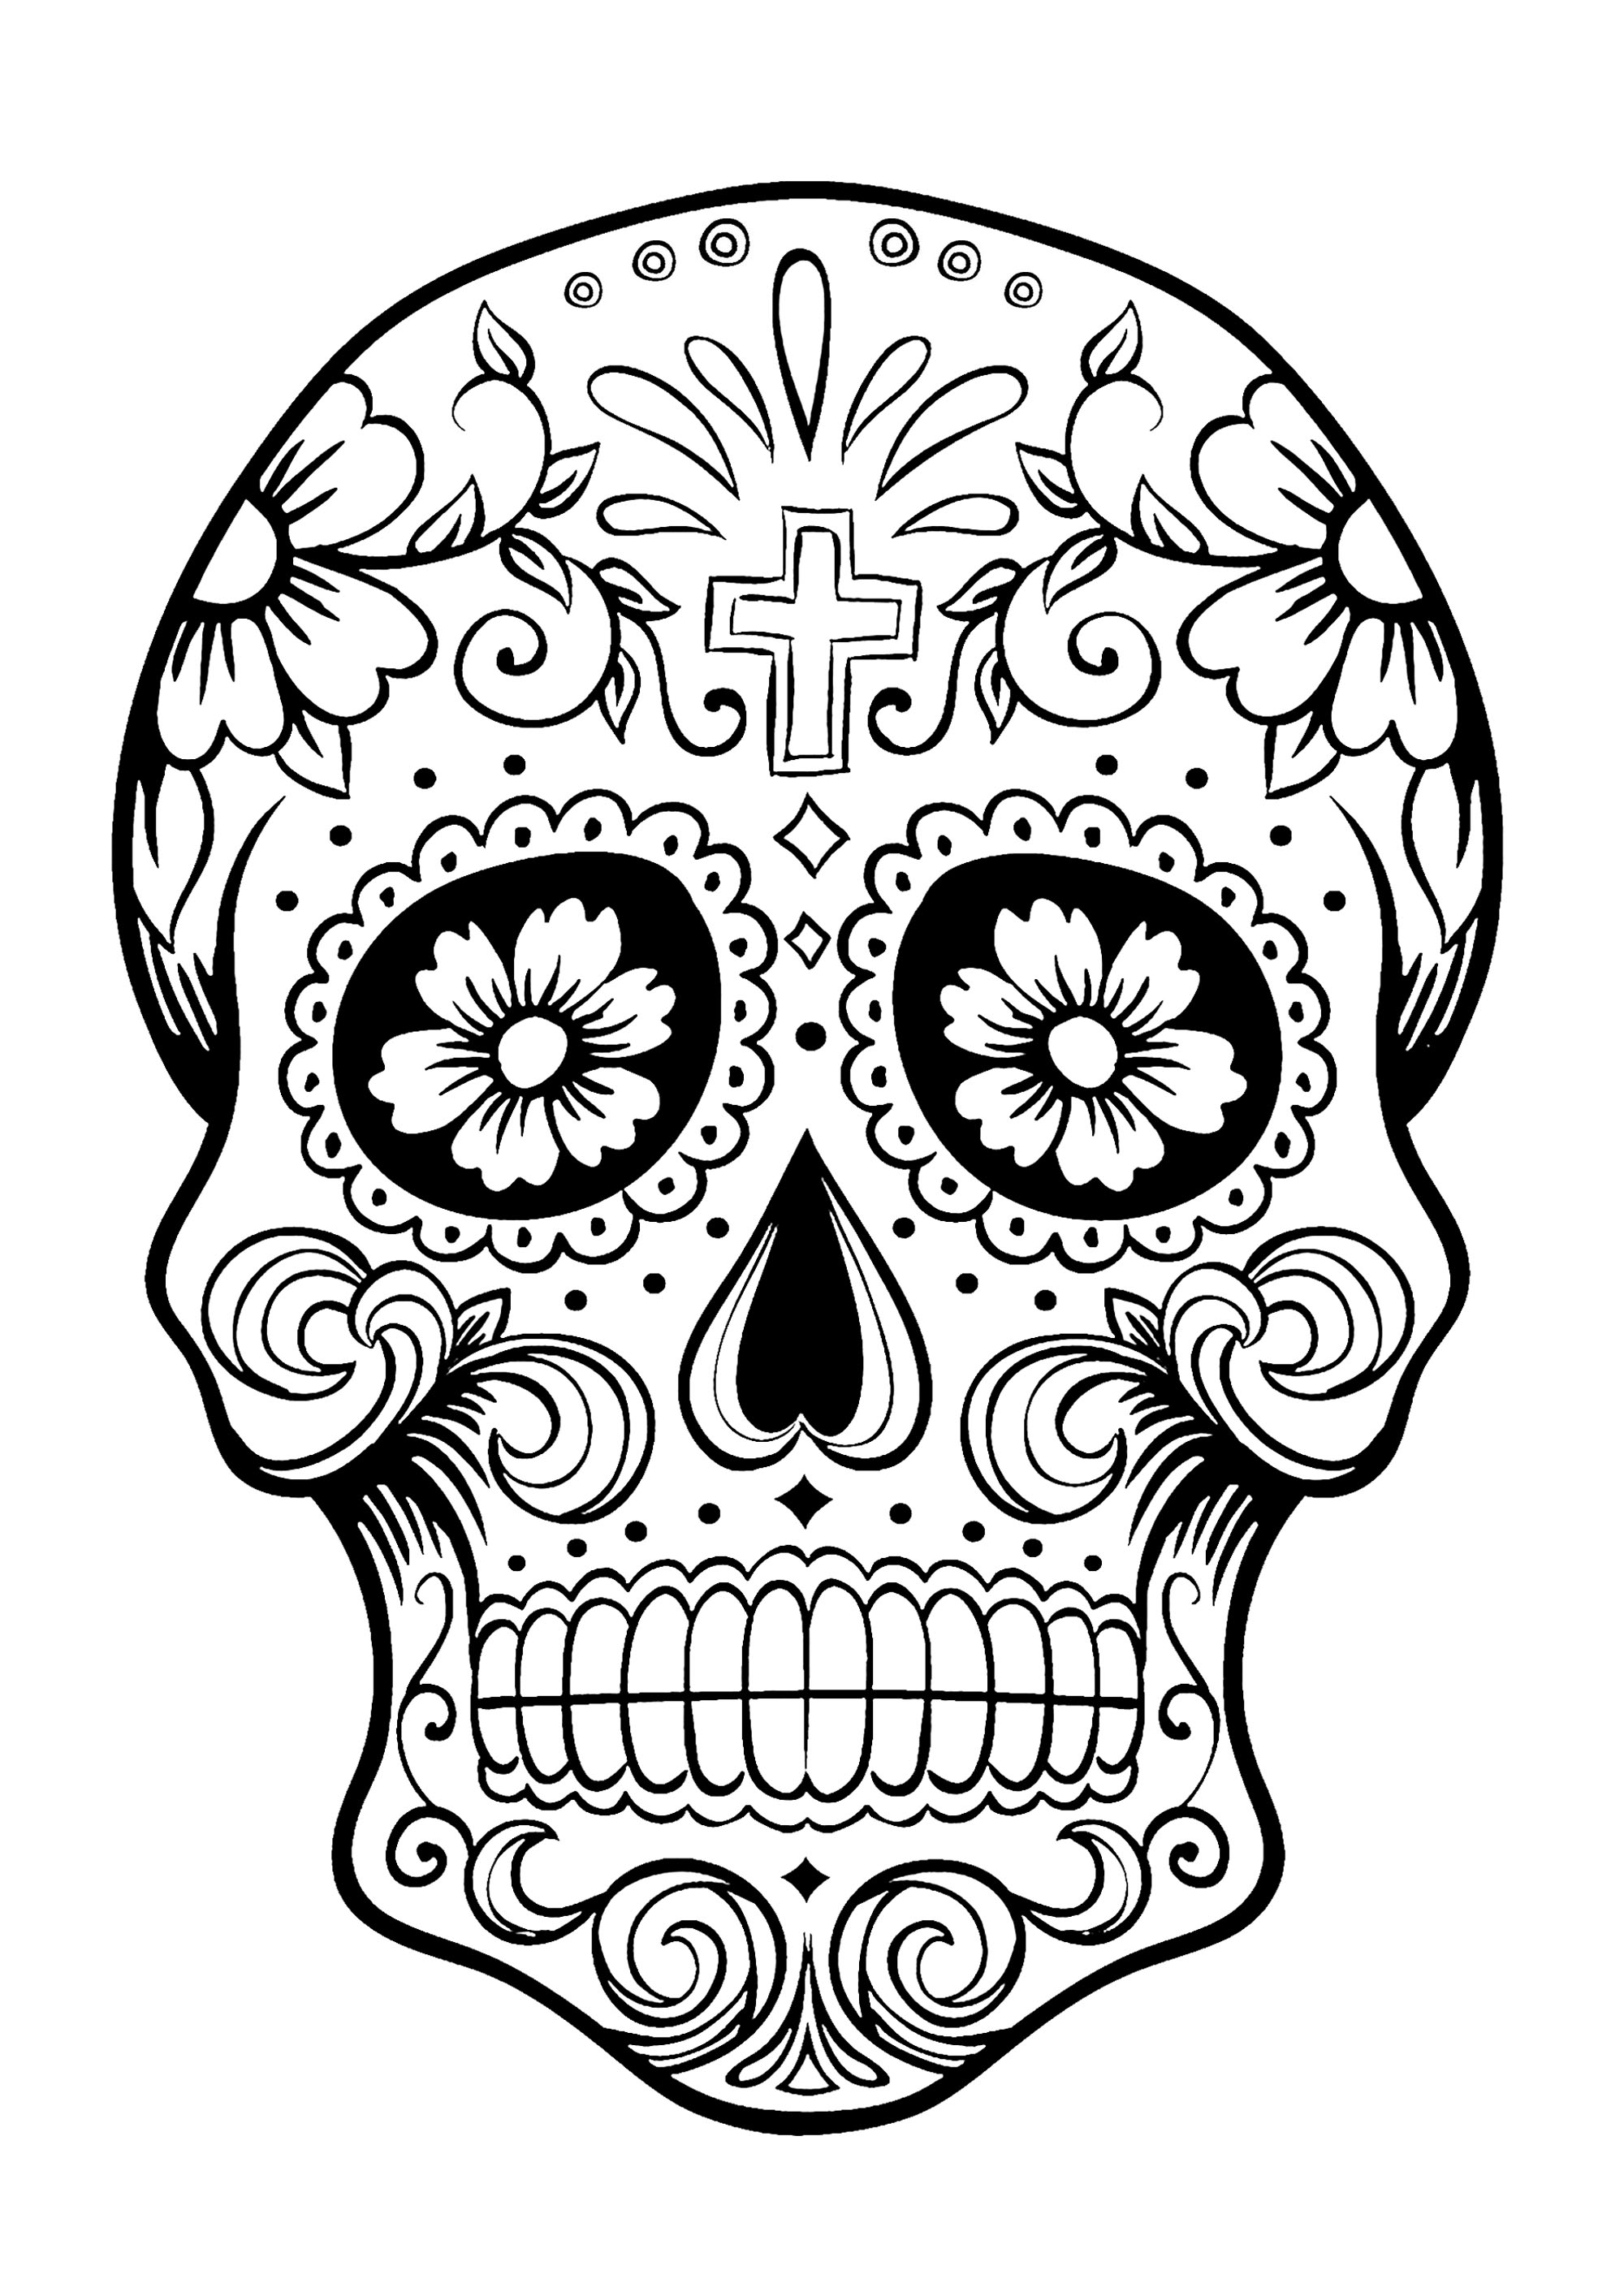 El Día de los Muertos / Day of the dead coloring page : Skull - 3, Artist : Art. Isabelle